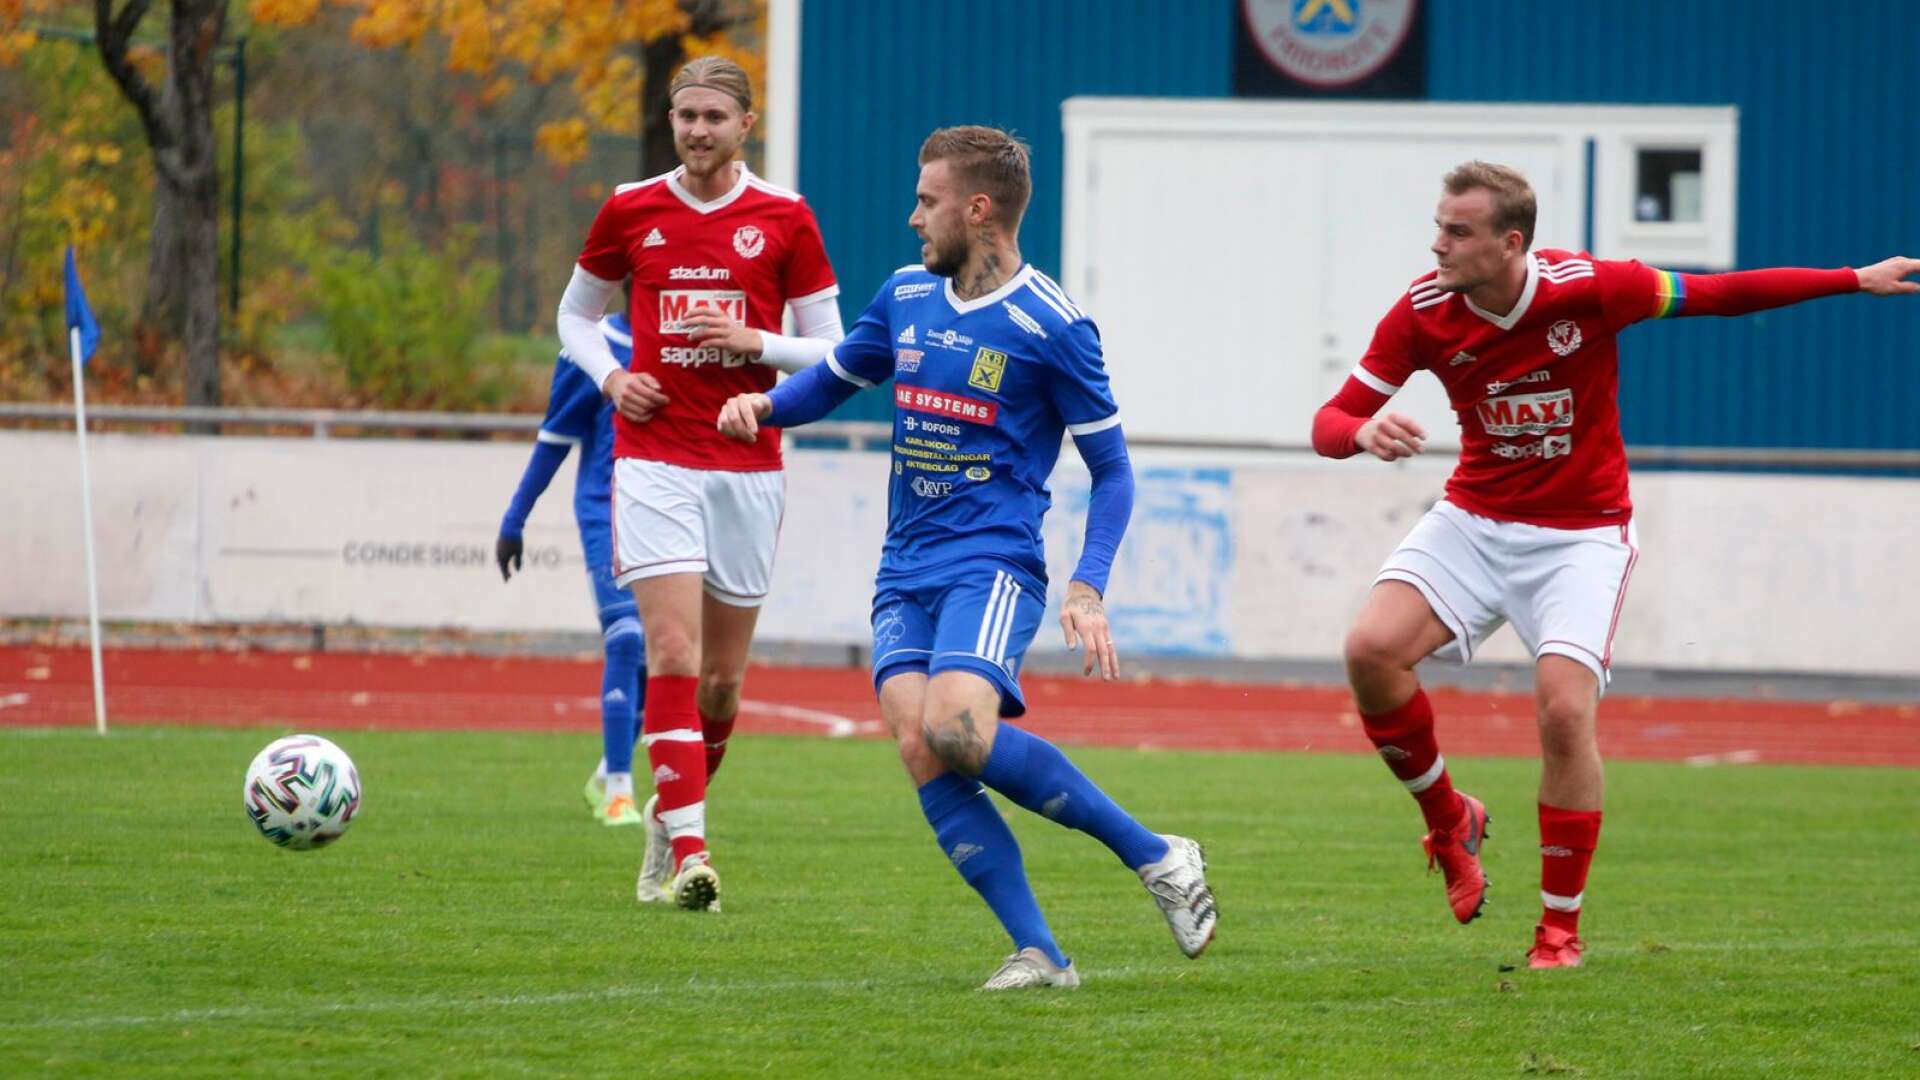 Max Selmer, här i en match förra säsongen, hade svårt att andas efter en rejäl flygtur i fredagens bortamatch mot Skoghall. Lungkapaciteten återhämtade sig dock till 100 procent under tiden han var på akuten i Karlstad.